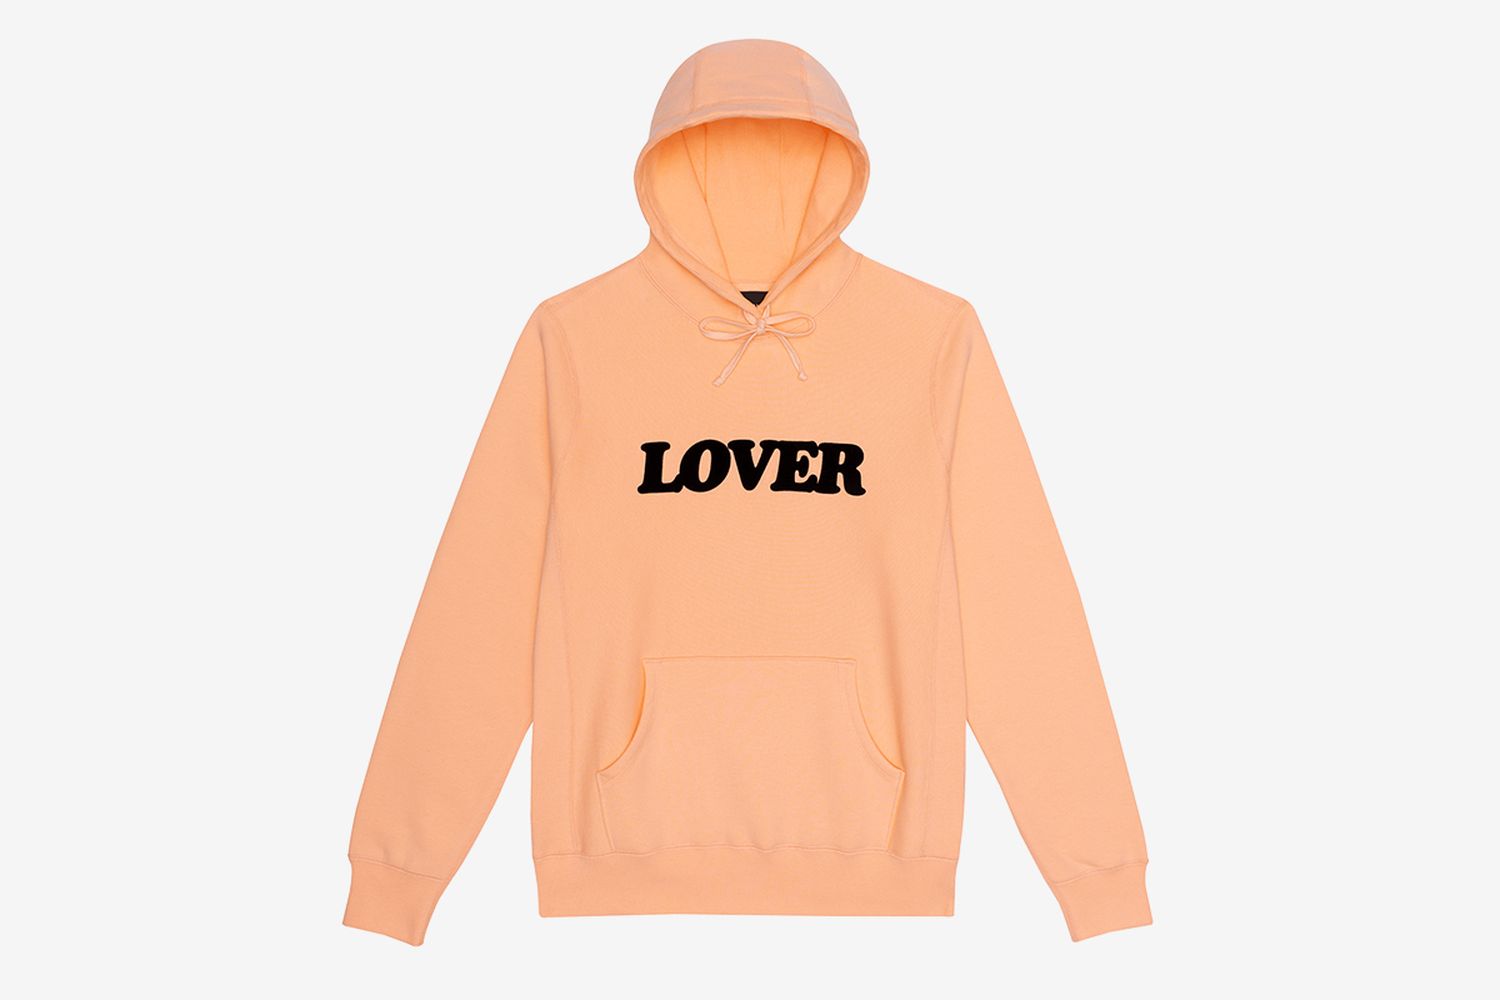 Lover Hooded Sweatshirt